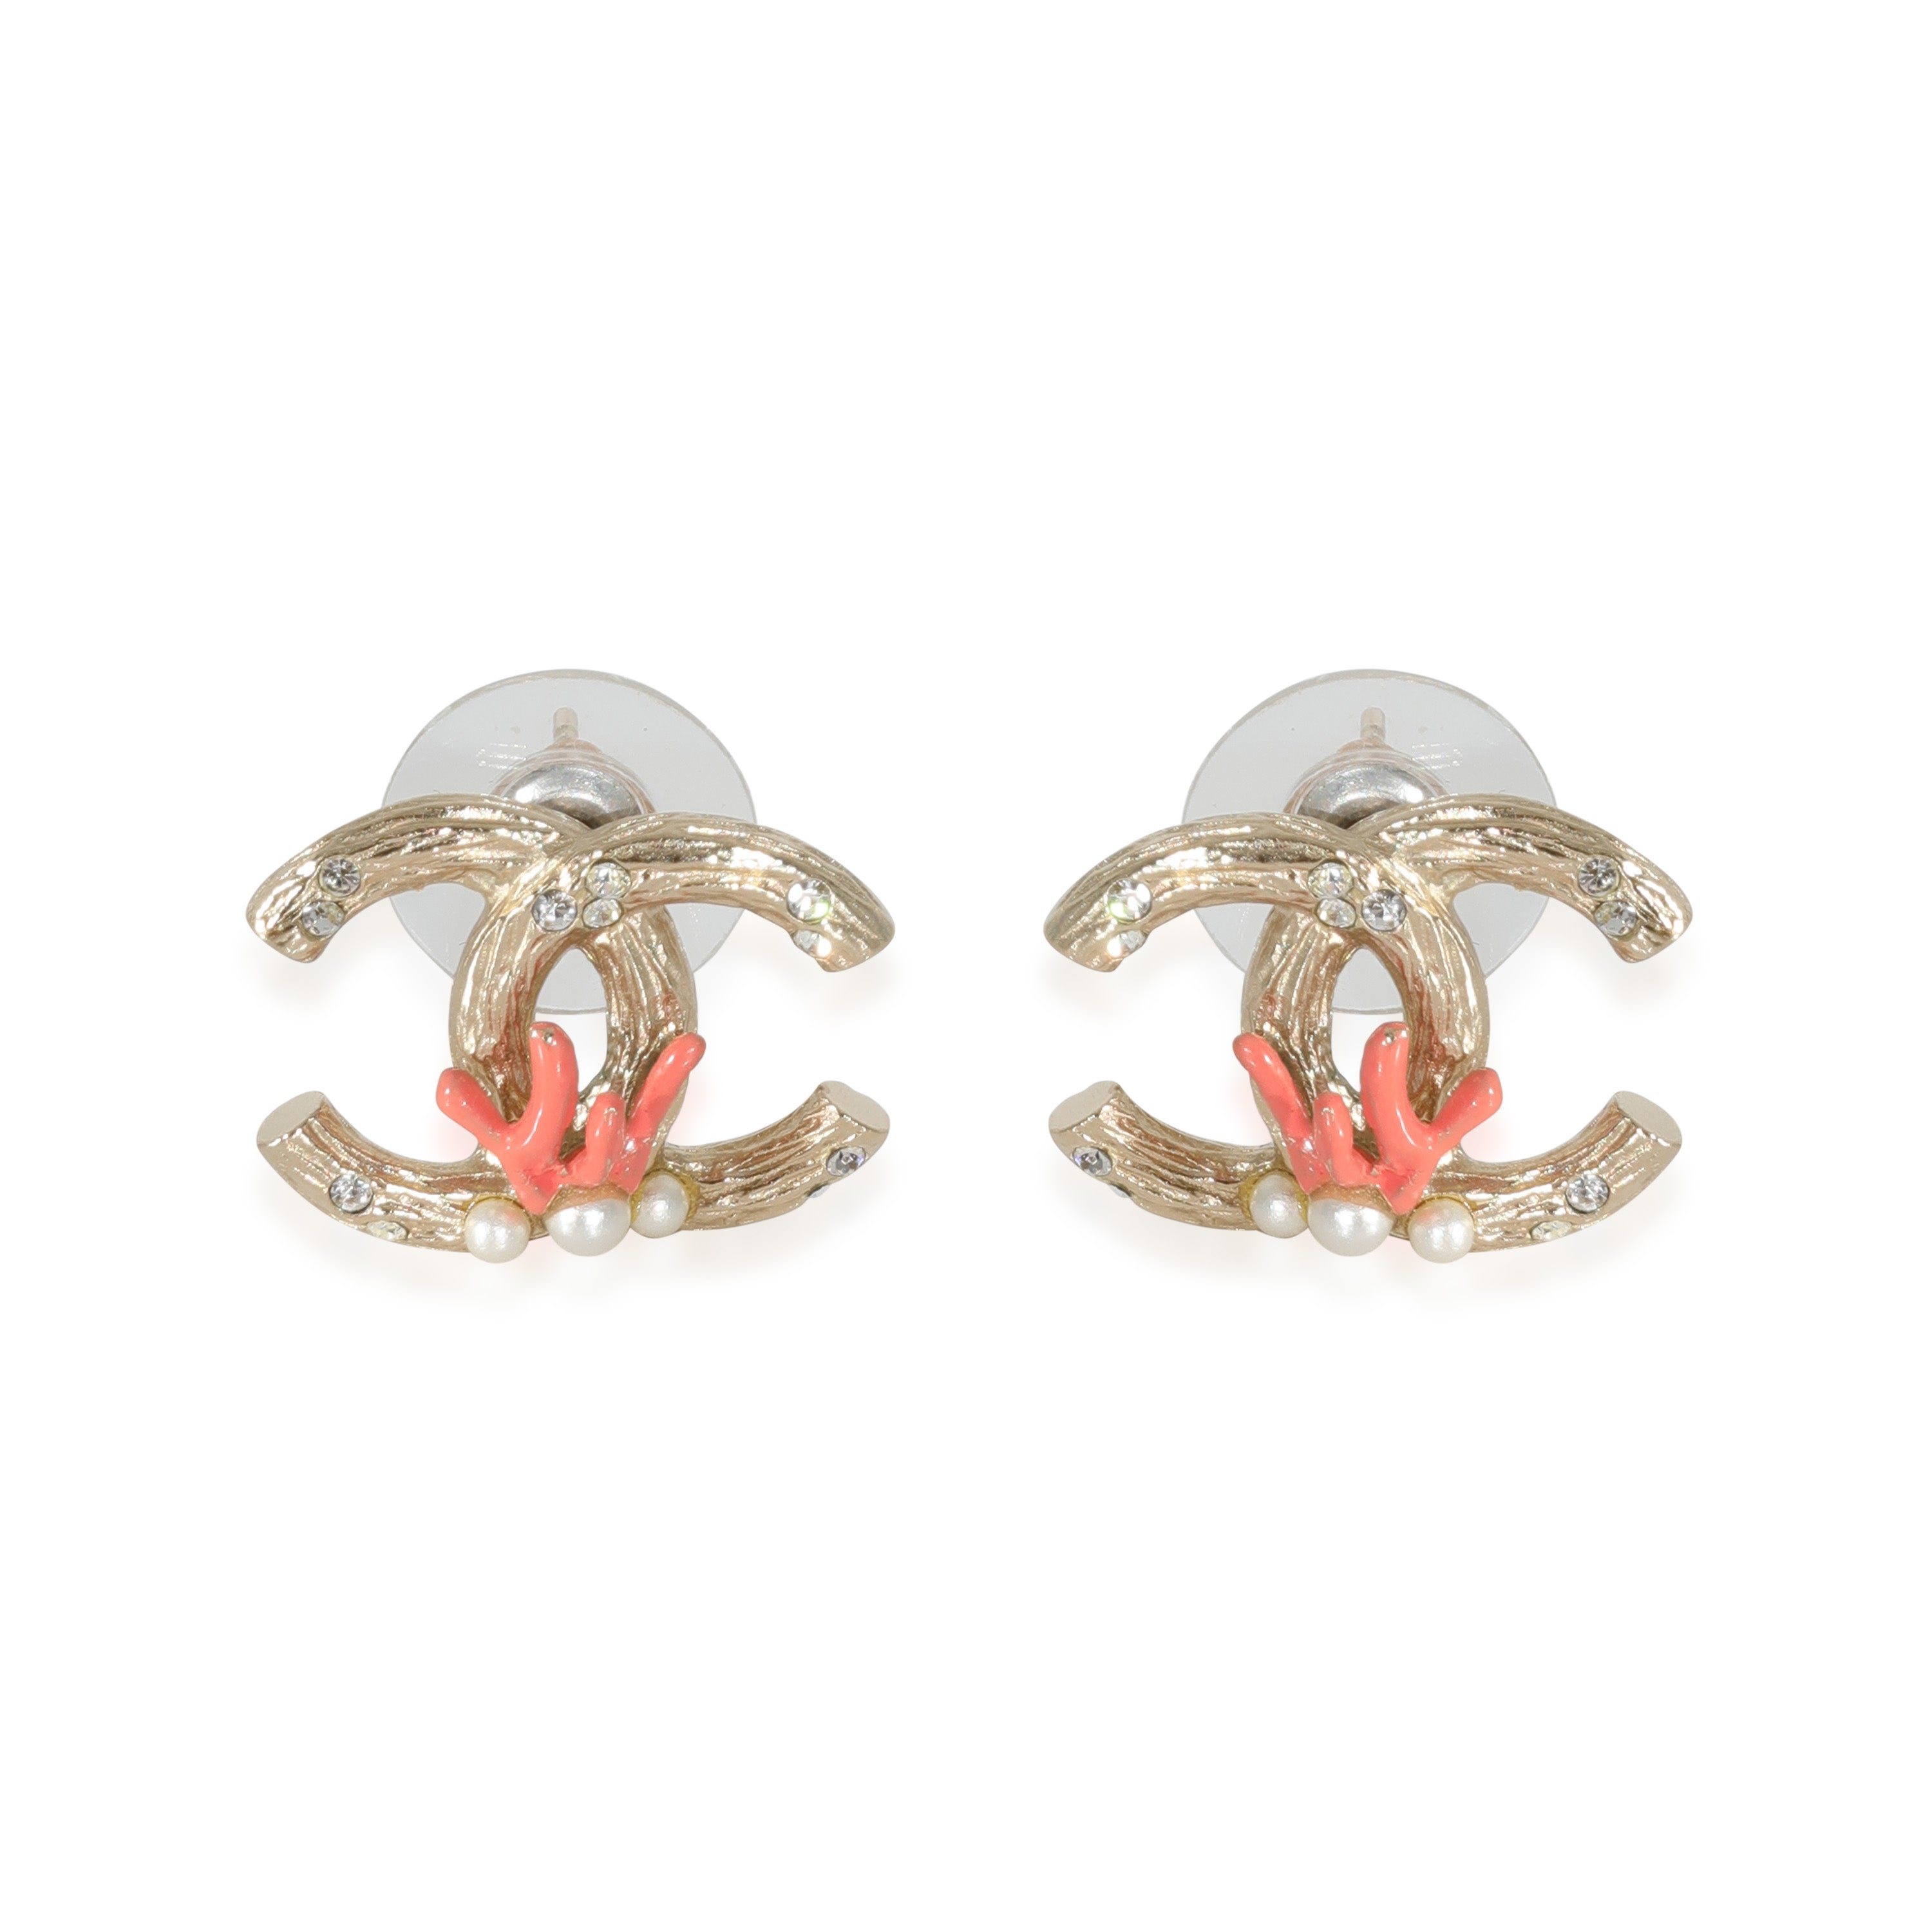 Chanel Inspired Stud Earrings – queenzprincessez